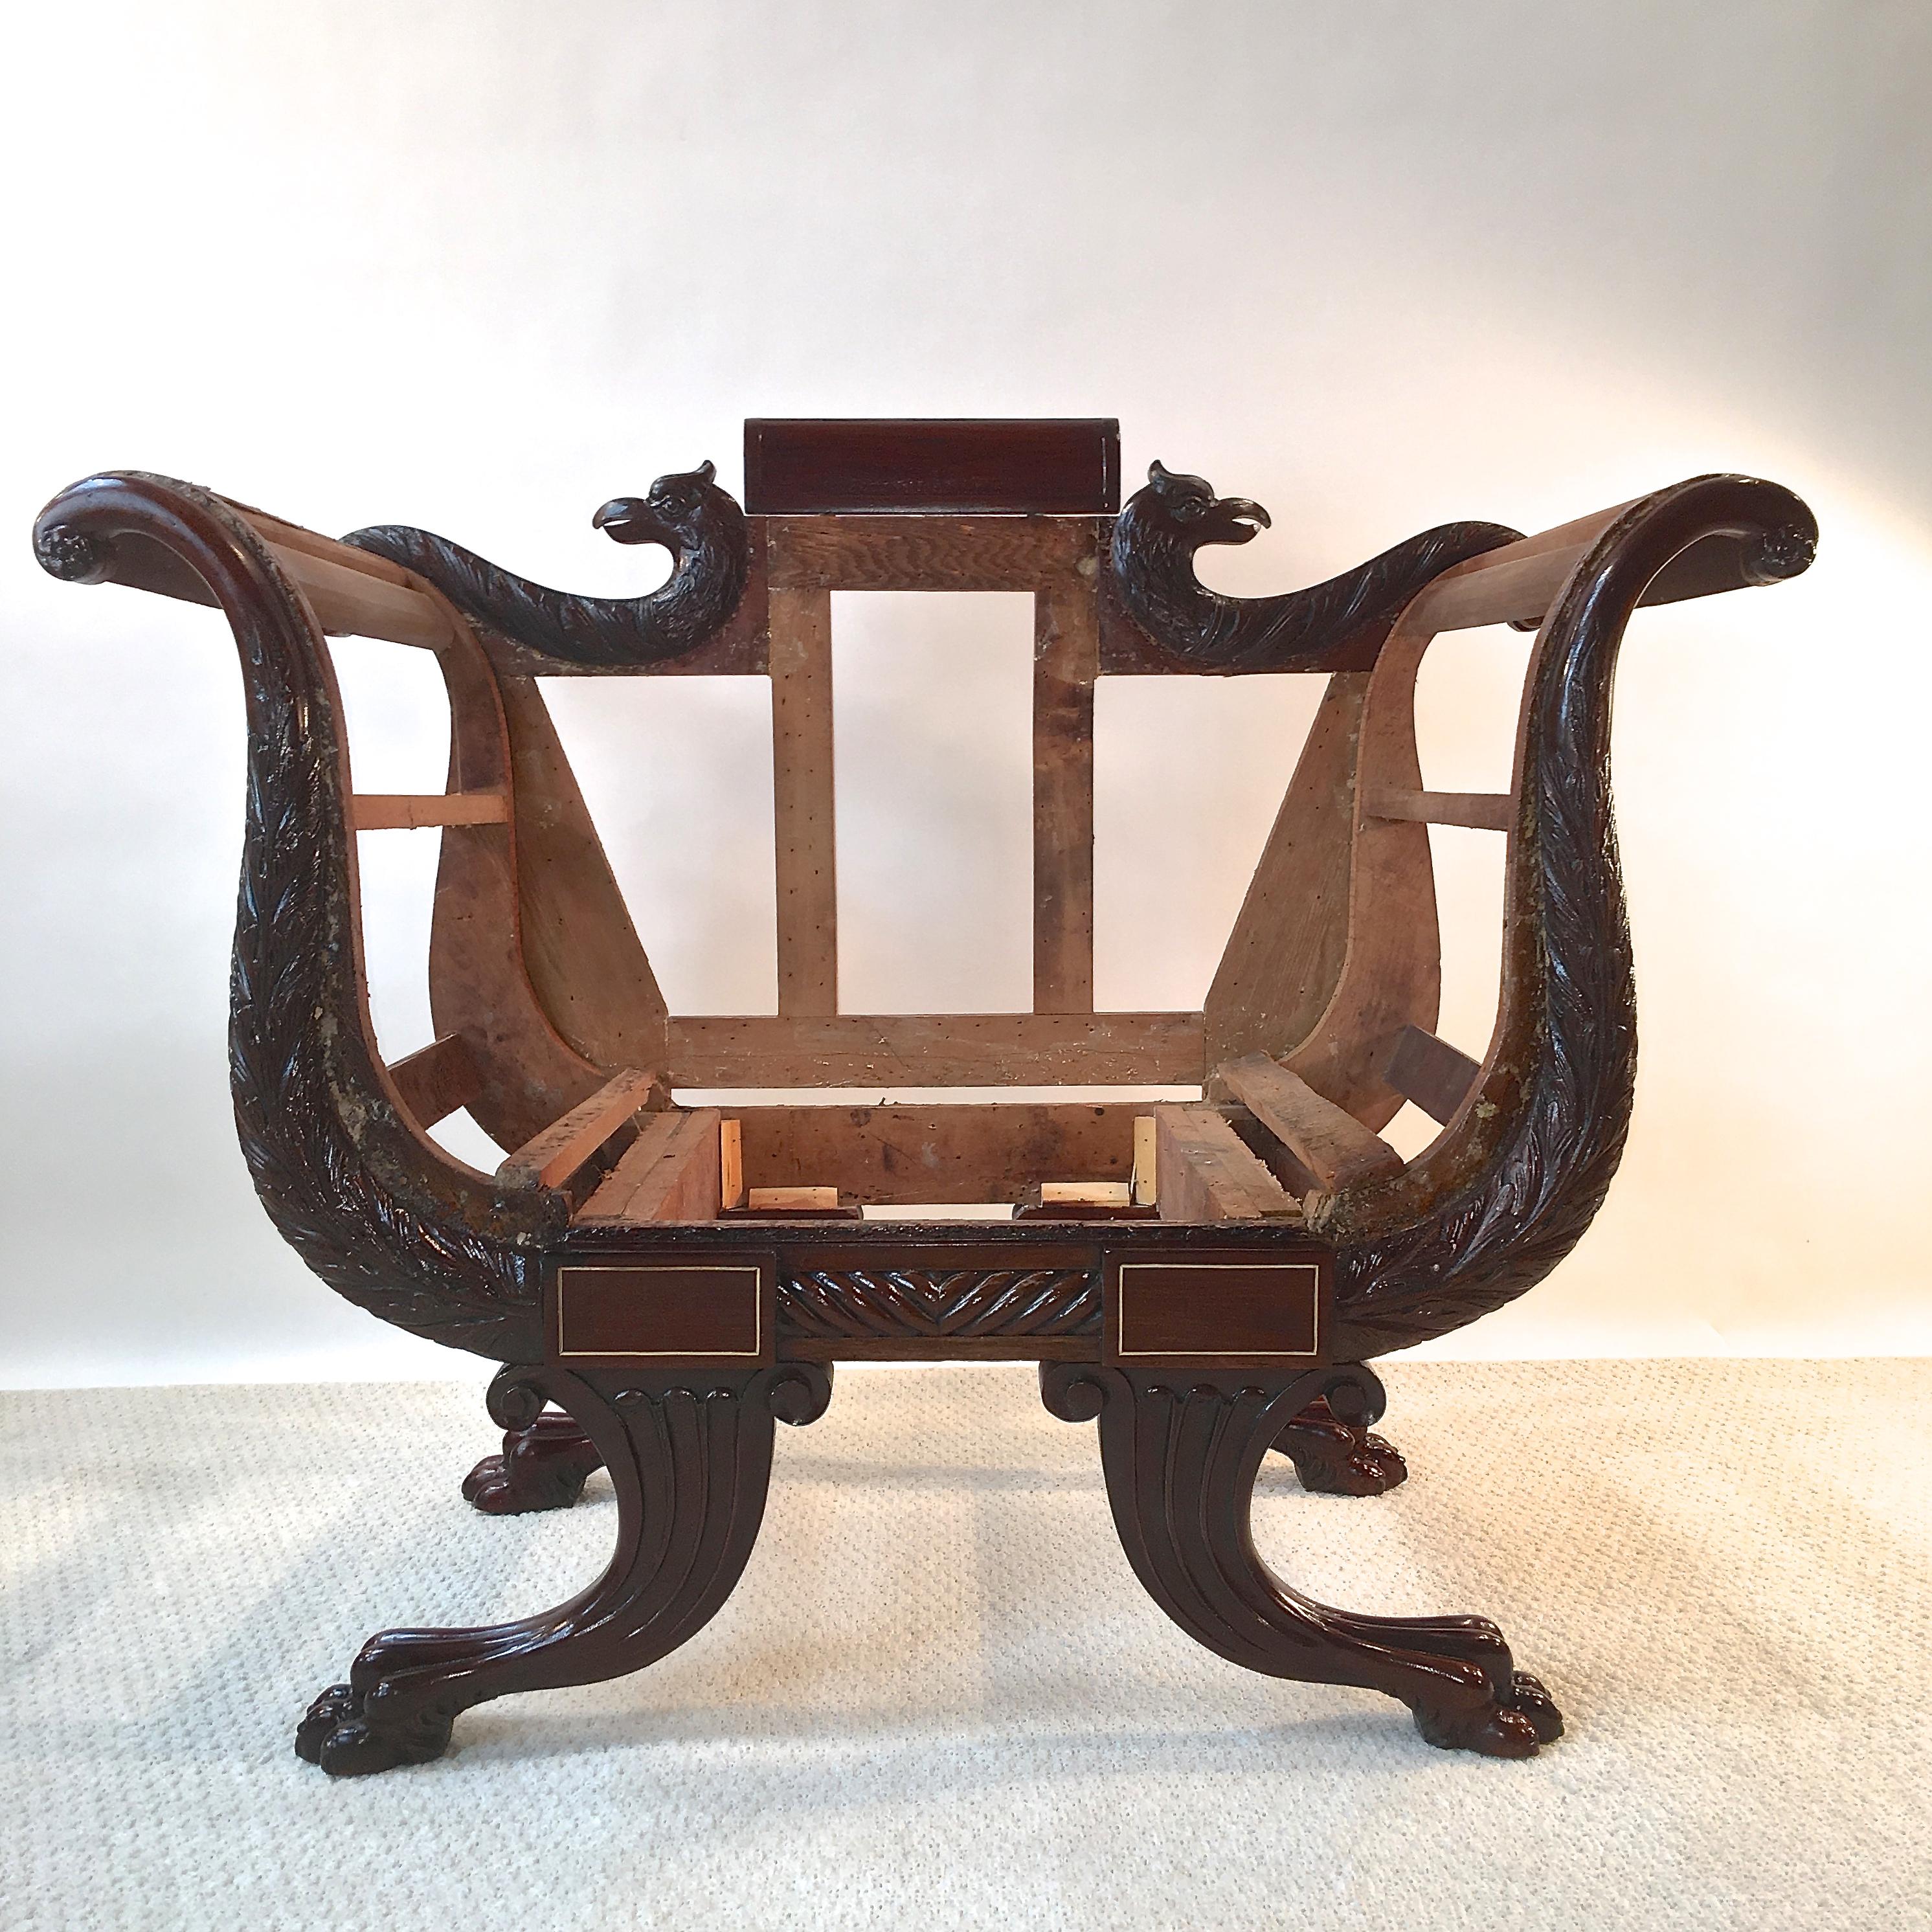 Amerikanischer Empire-Stuhl aus der Mitte des späten 19. Jahrhunderts (Zweite Periode), entlackt, gestrafft, restauriert und poliert, bereit für die Werkbank Ihres Polsterhändlers.
Es ist höchst ungewöhnlich, Sitzmöbel dieser Zeit und dieses Stils